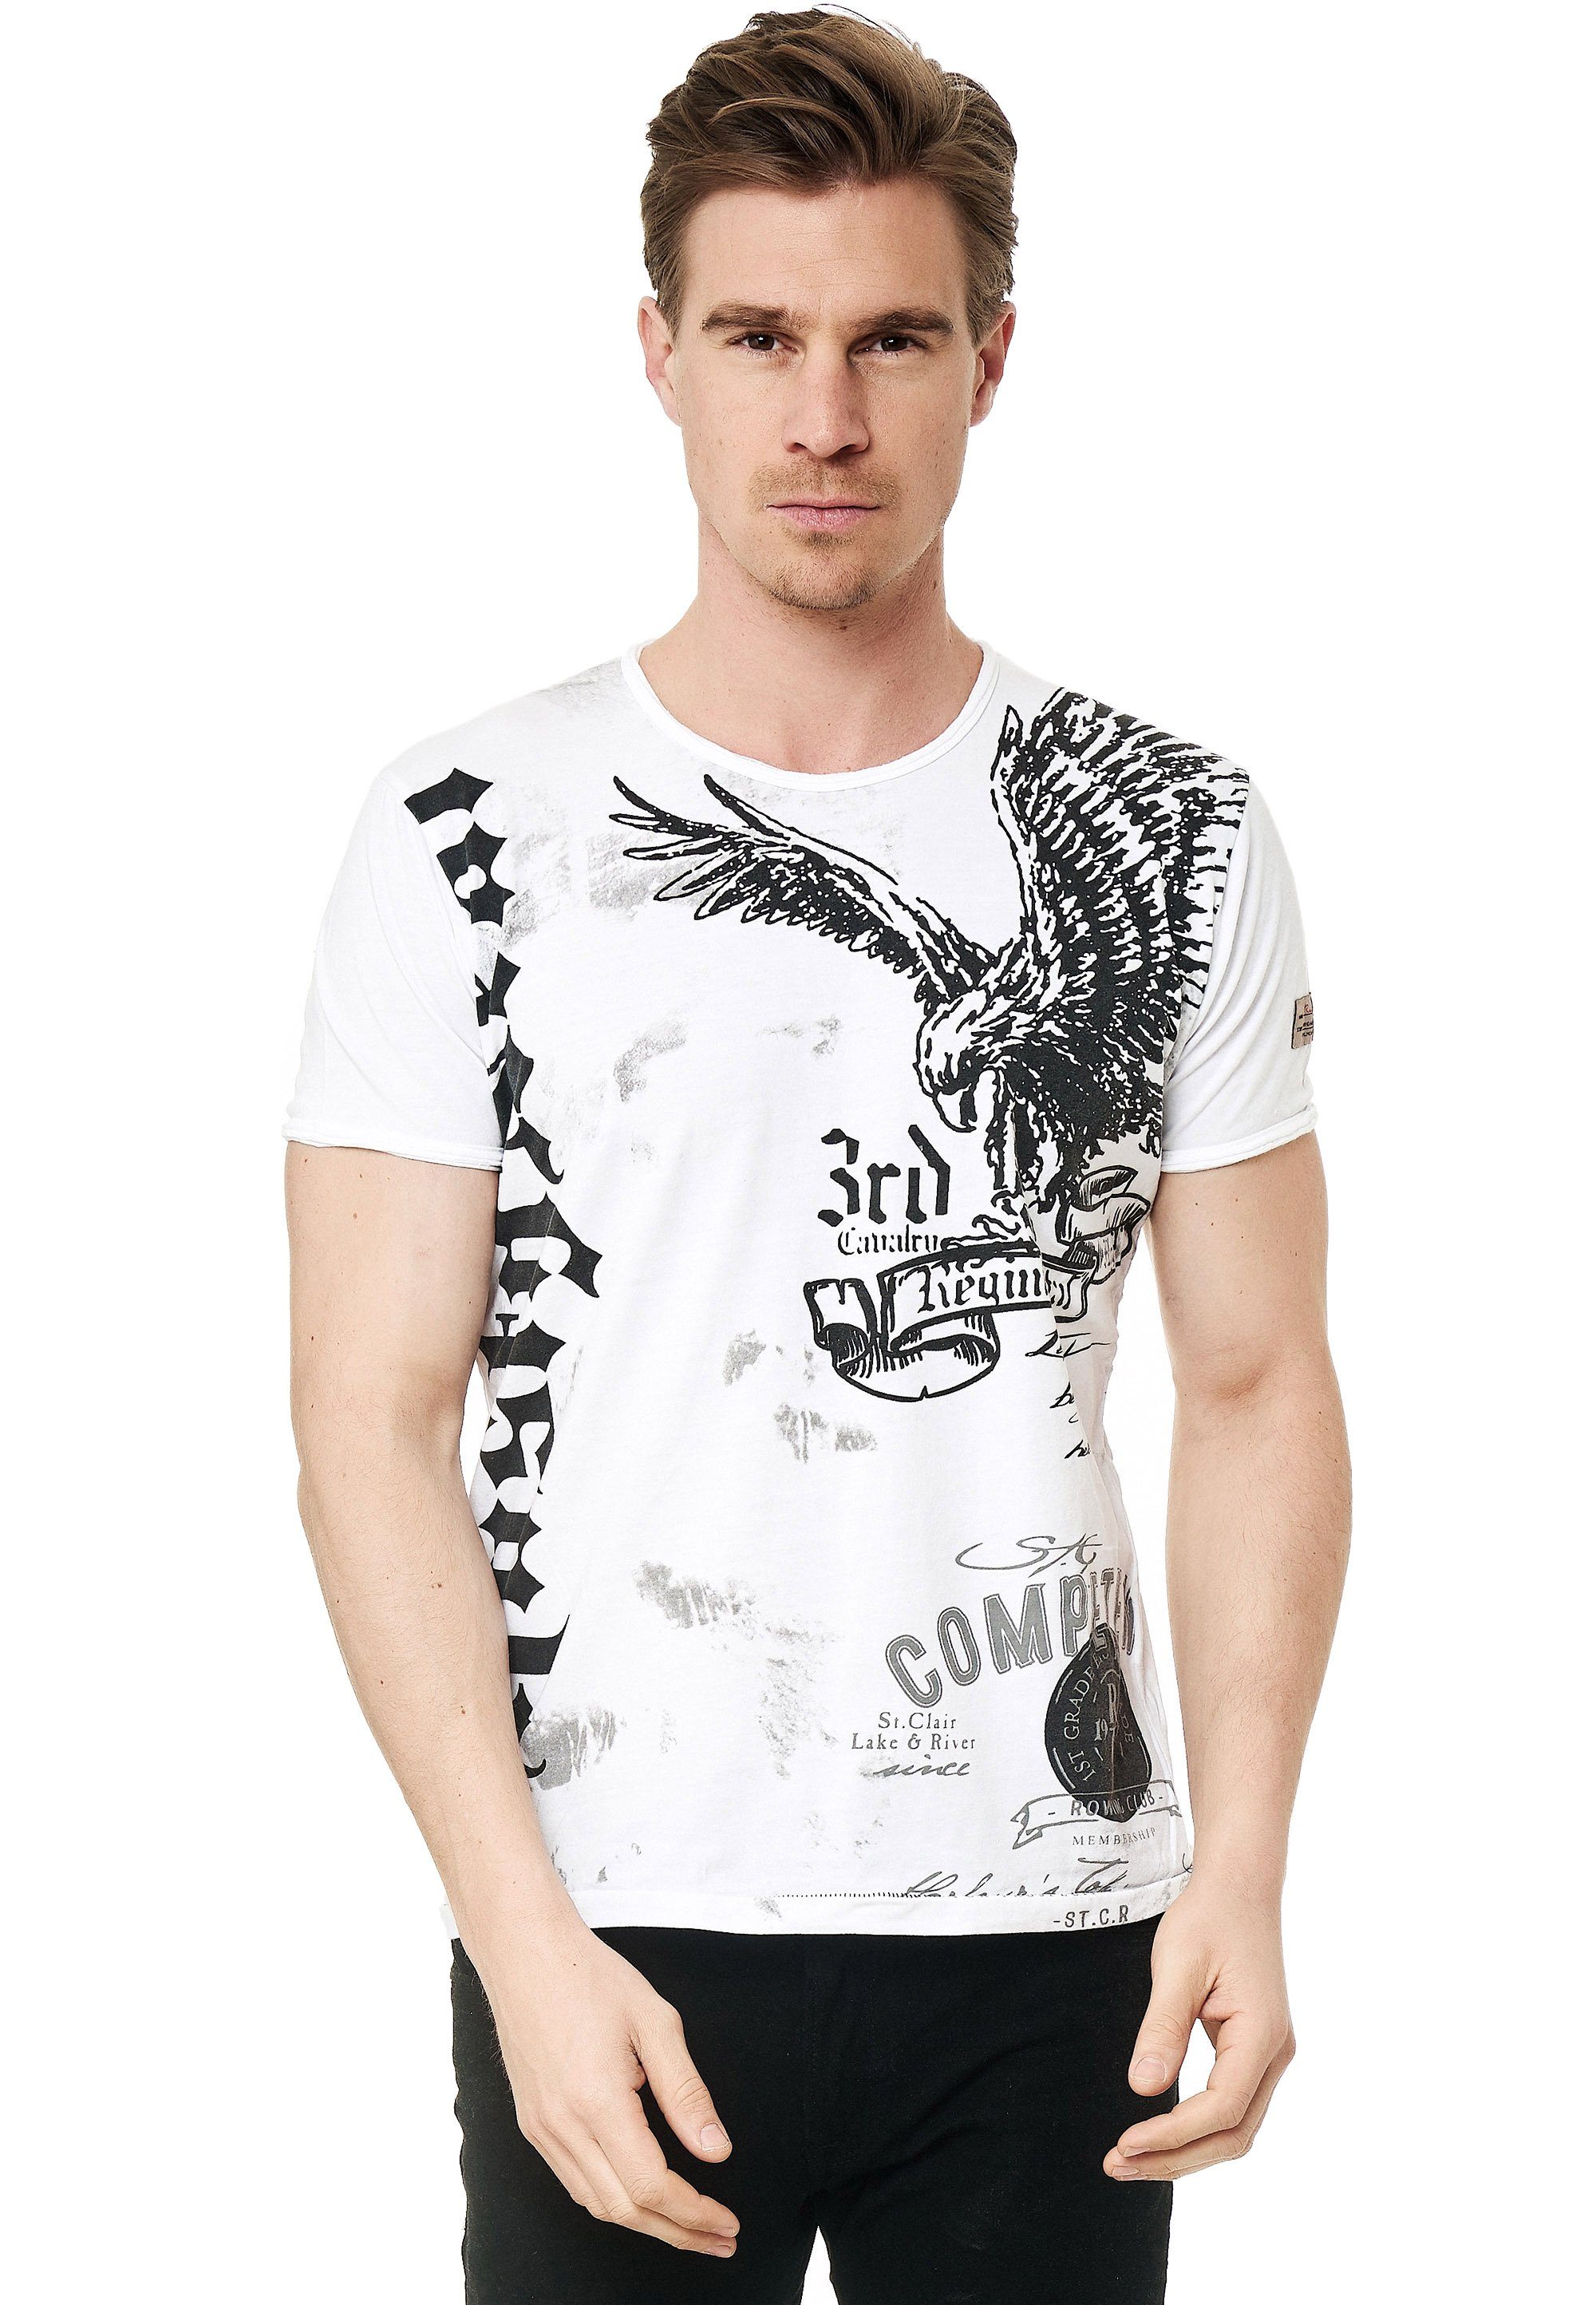 Rusty Neal T-Shirt mit Adler-Print weiß-schwarz